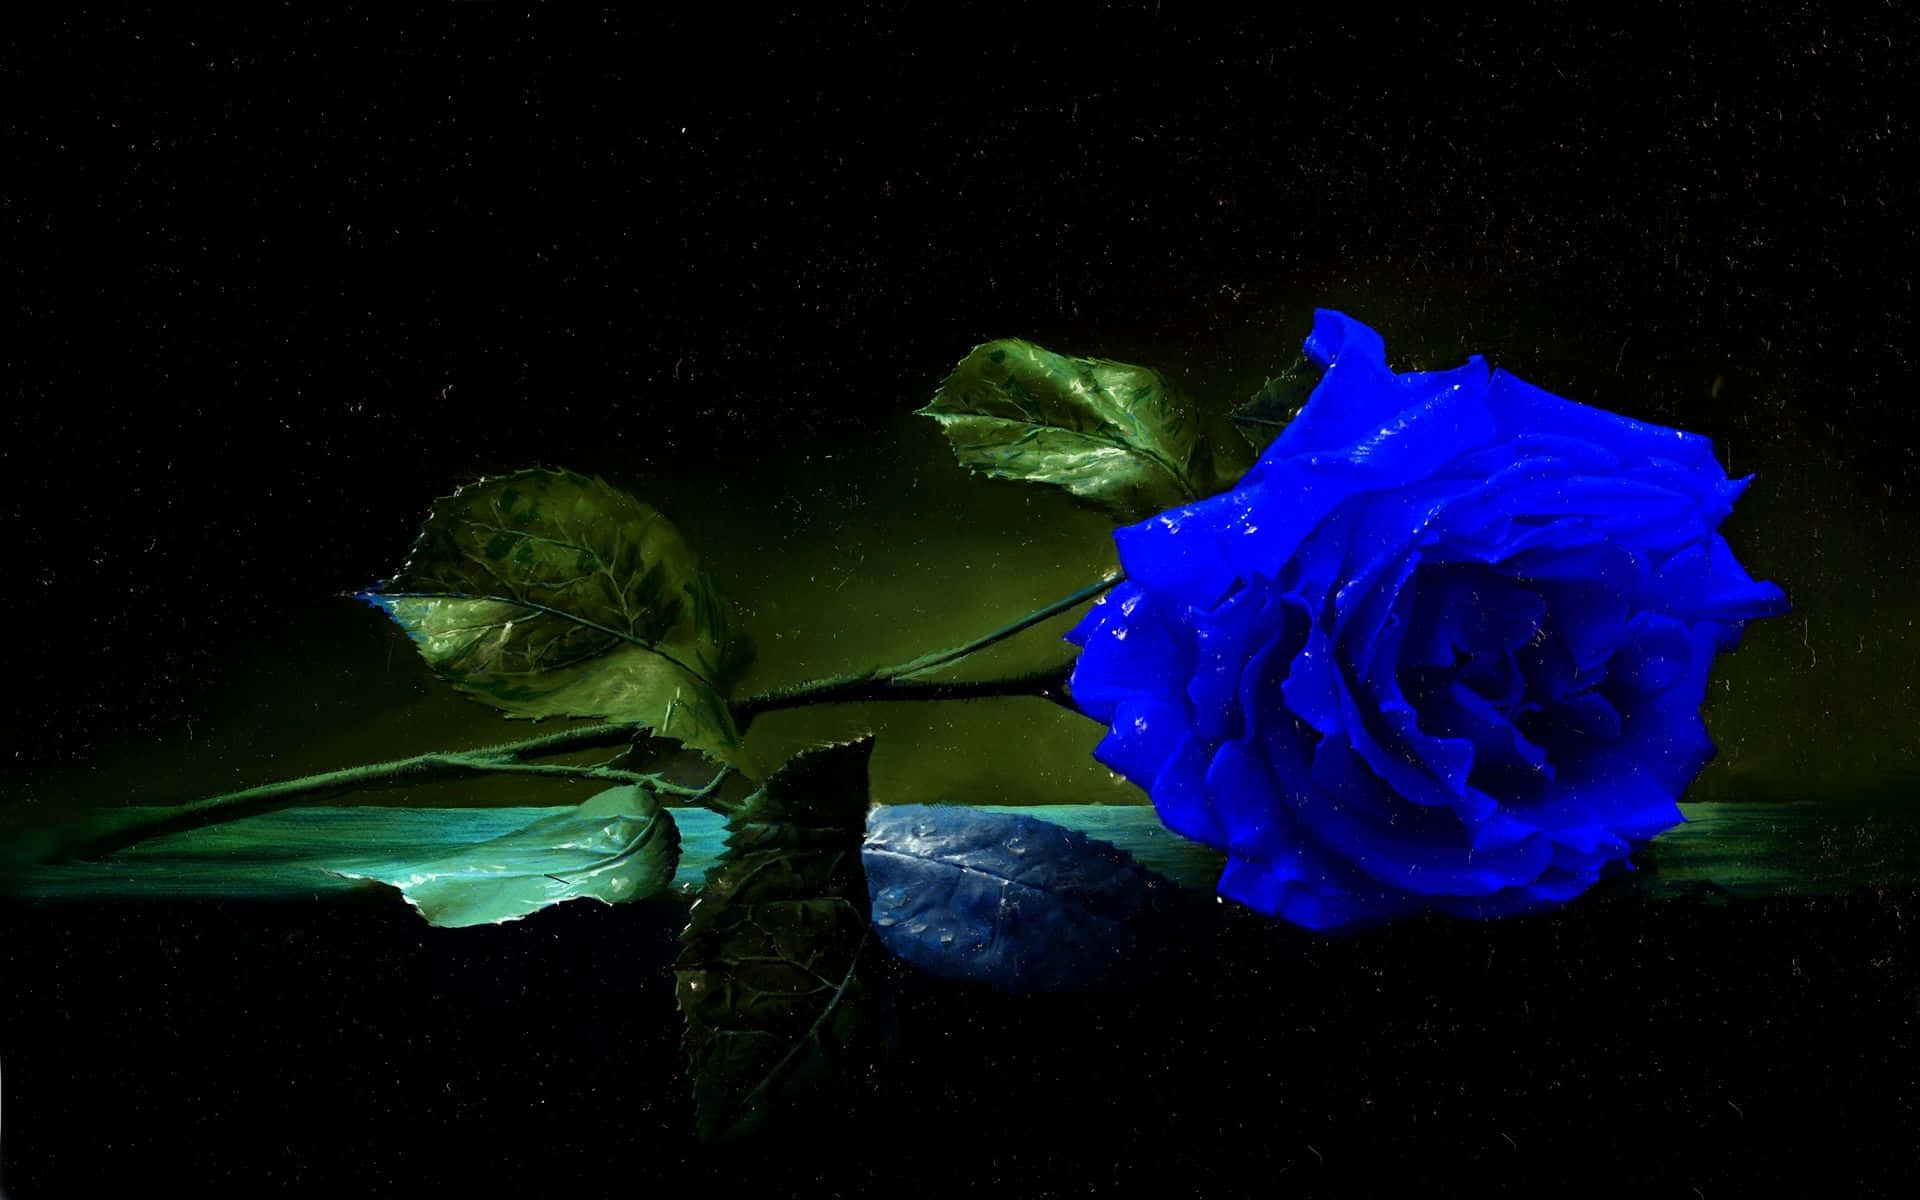 En forbløffende blå rose, symboliserende den sjældne og mystiske. Wallpaper